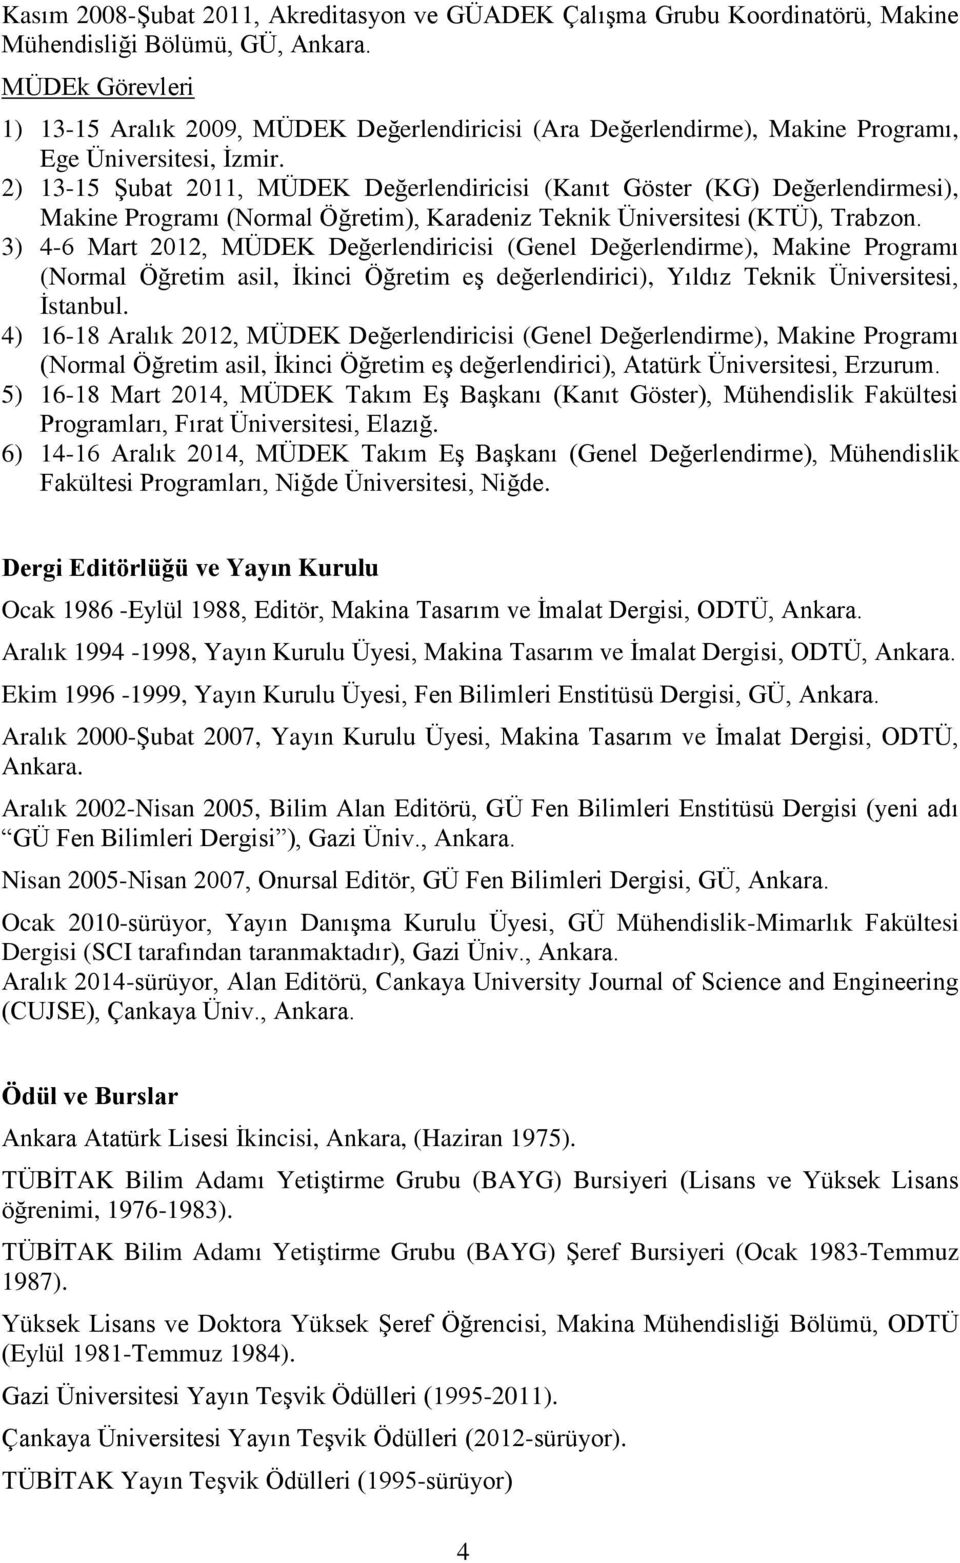 3) 4-6 Mart 2012, MÜDEK Değerlendiricisi (Genel Değerlendirme), Makine Programı (Normal Öğretim asil, İkinci Öğretim eş değerlendirici), Yıldız Teknik Üniversitesi, İstanbul.